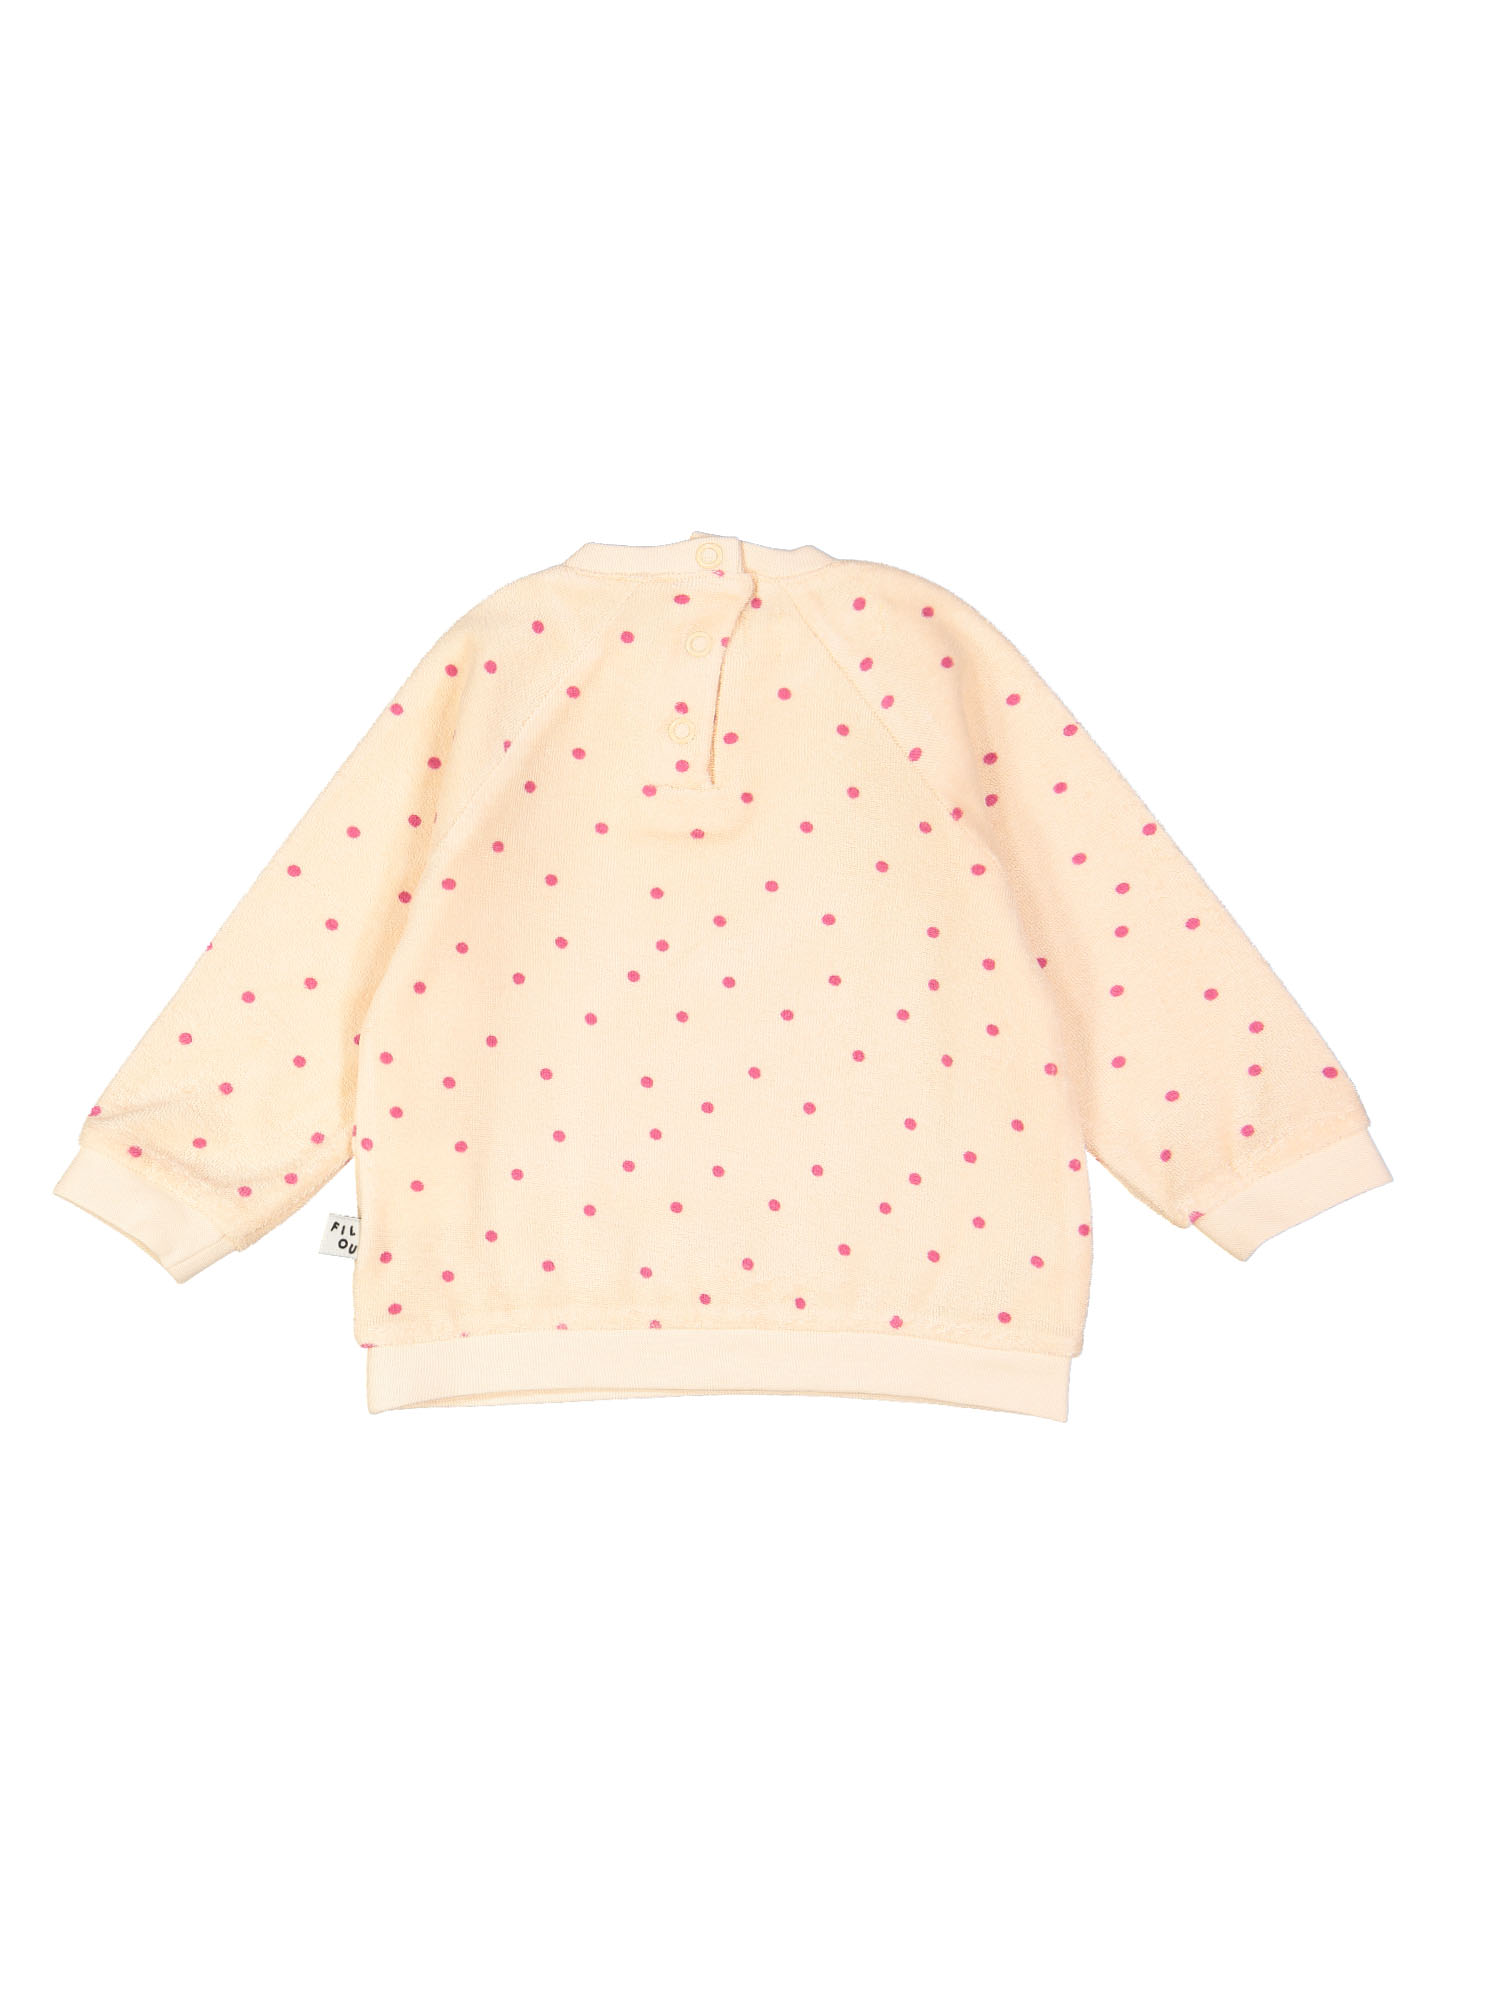 sweater mini dots spons bluch 18m